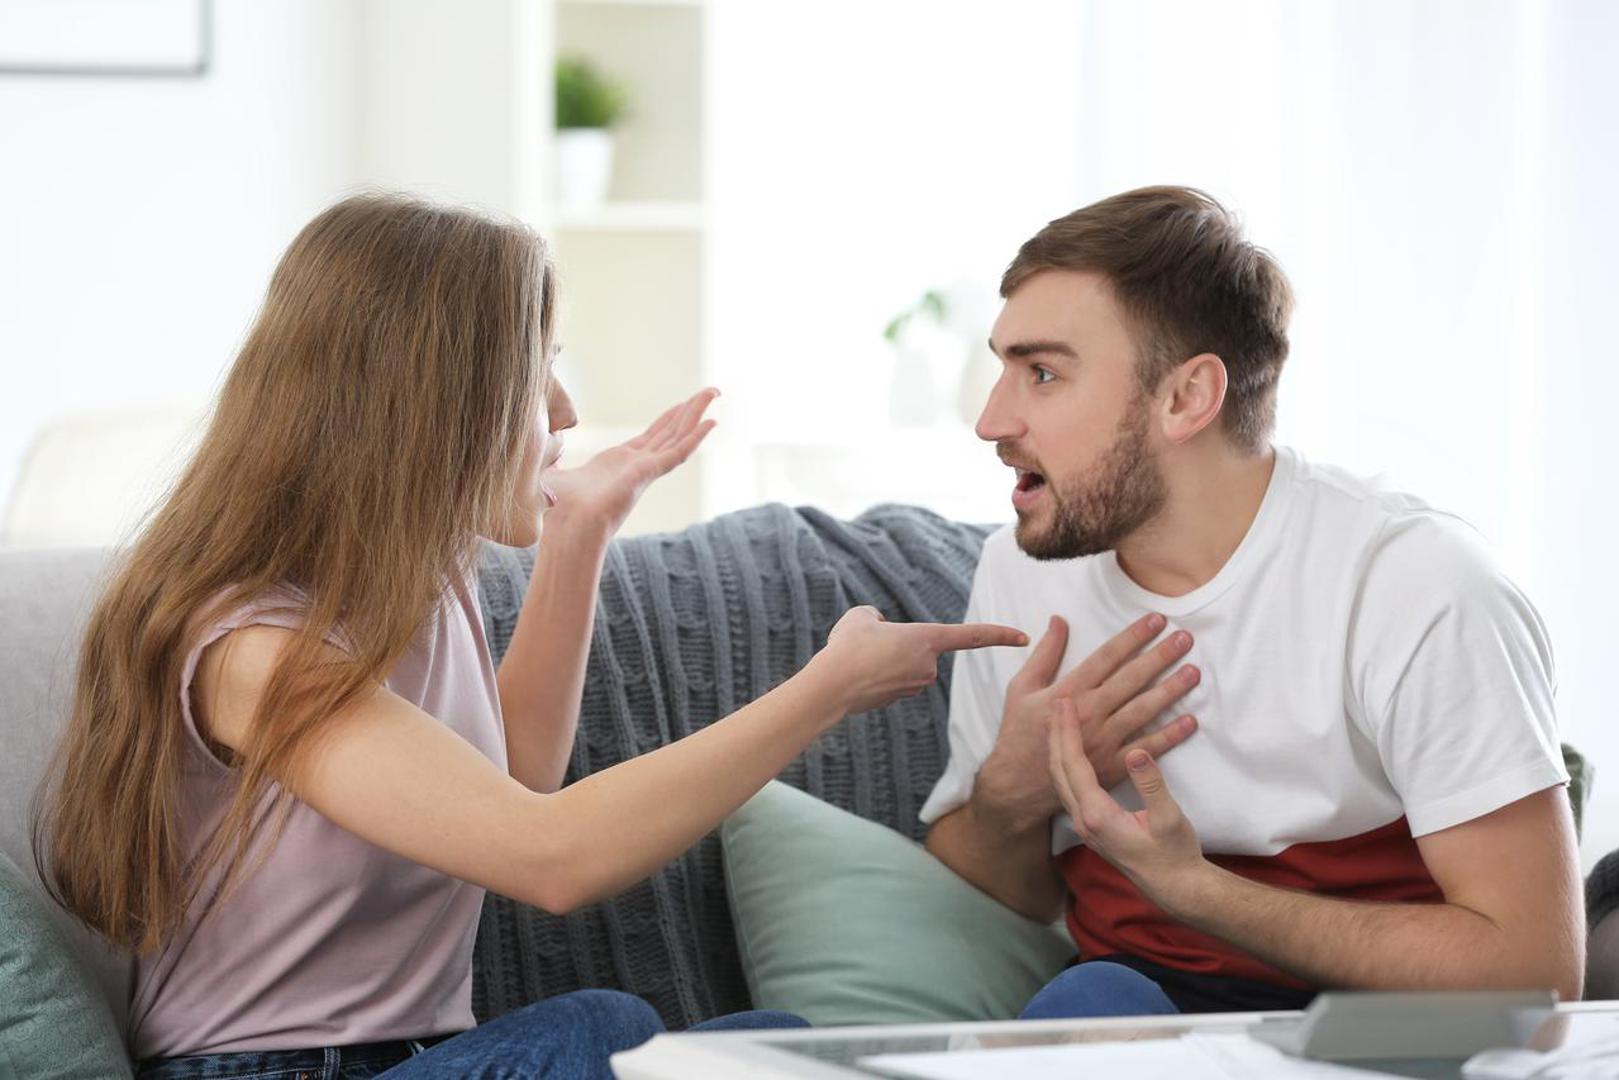 Neučinkovito komuniciranje
41 posto ispitanika navelo je nedovoljnu komunikaciju kao faktor broj jedan koji bi promijenili u svojoj sljedećoj vezi, jer je nedostatak dobre komunikacije najveći razlog težnje za razvodom. Psihologinja tvrdi da bi se trebalo vježbati aktivno slušanje, odnosno da partneri pokušavaju čuti što druga osoba govori, ponavljajući ono što su upravo čuli i pitajući jesu li dobro razumjeli. Također kaže da partneri moraju otkriti više o sebi kako bi održali komunikaciju. 